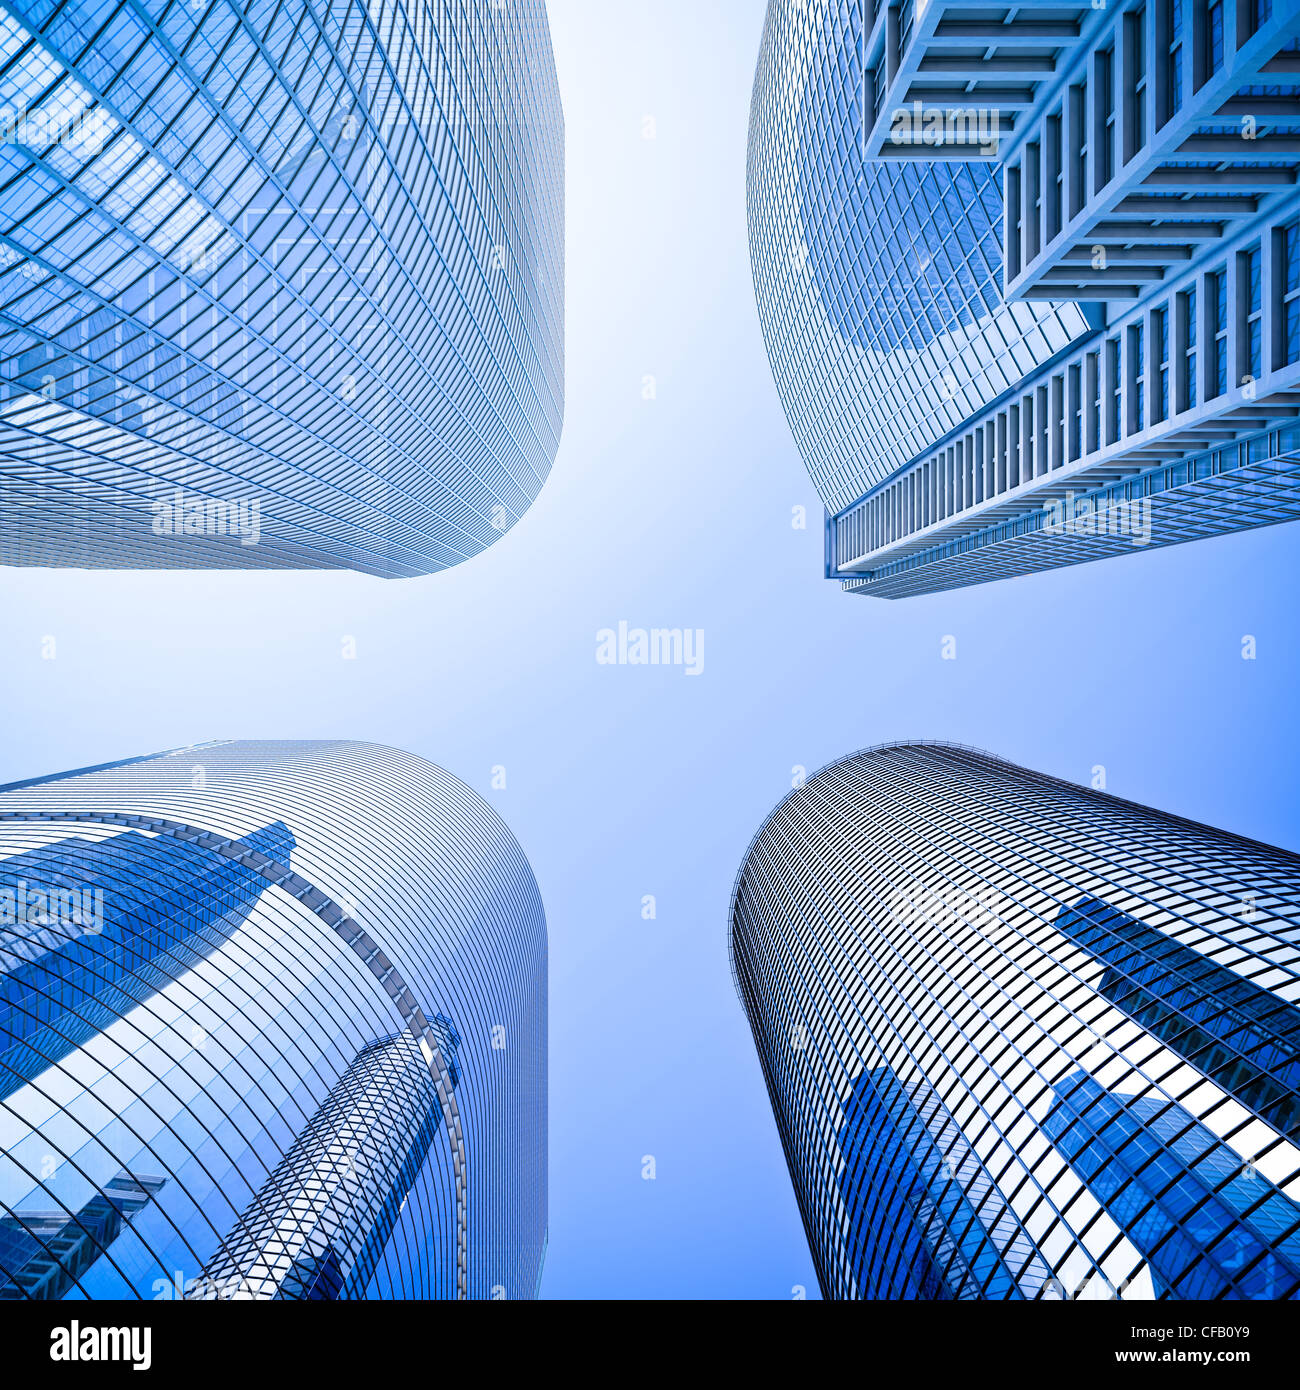 Vier Highrise Glas Wolkenkratzer Gebäude geringer Schnittwinkel in blau dominant gegen einen klaren Himmel geschossen Stockfoto